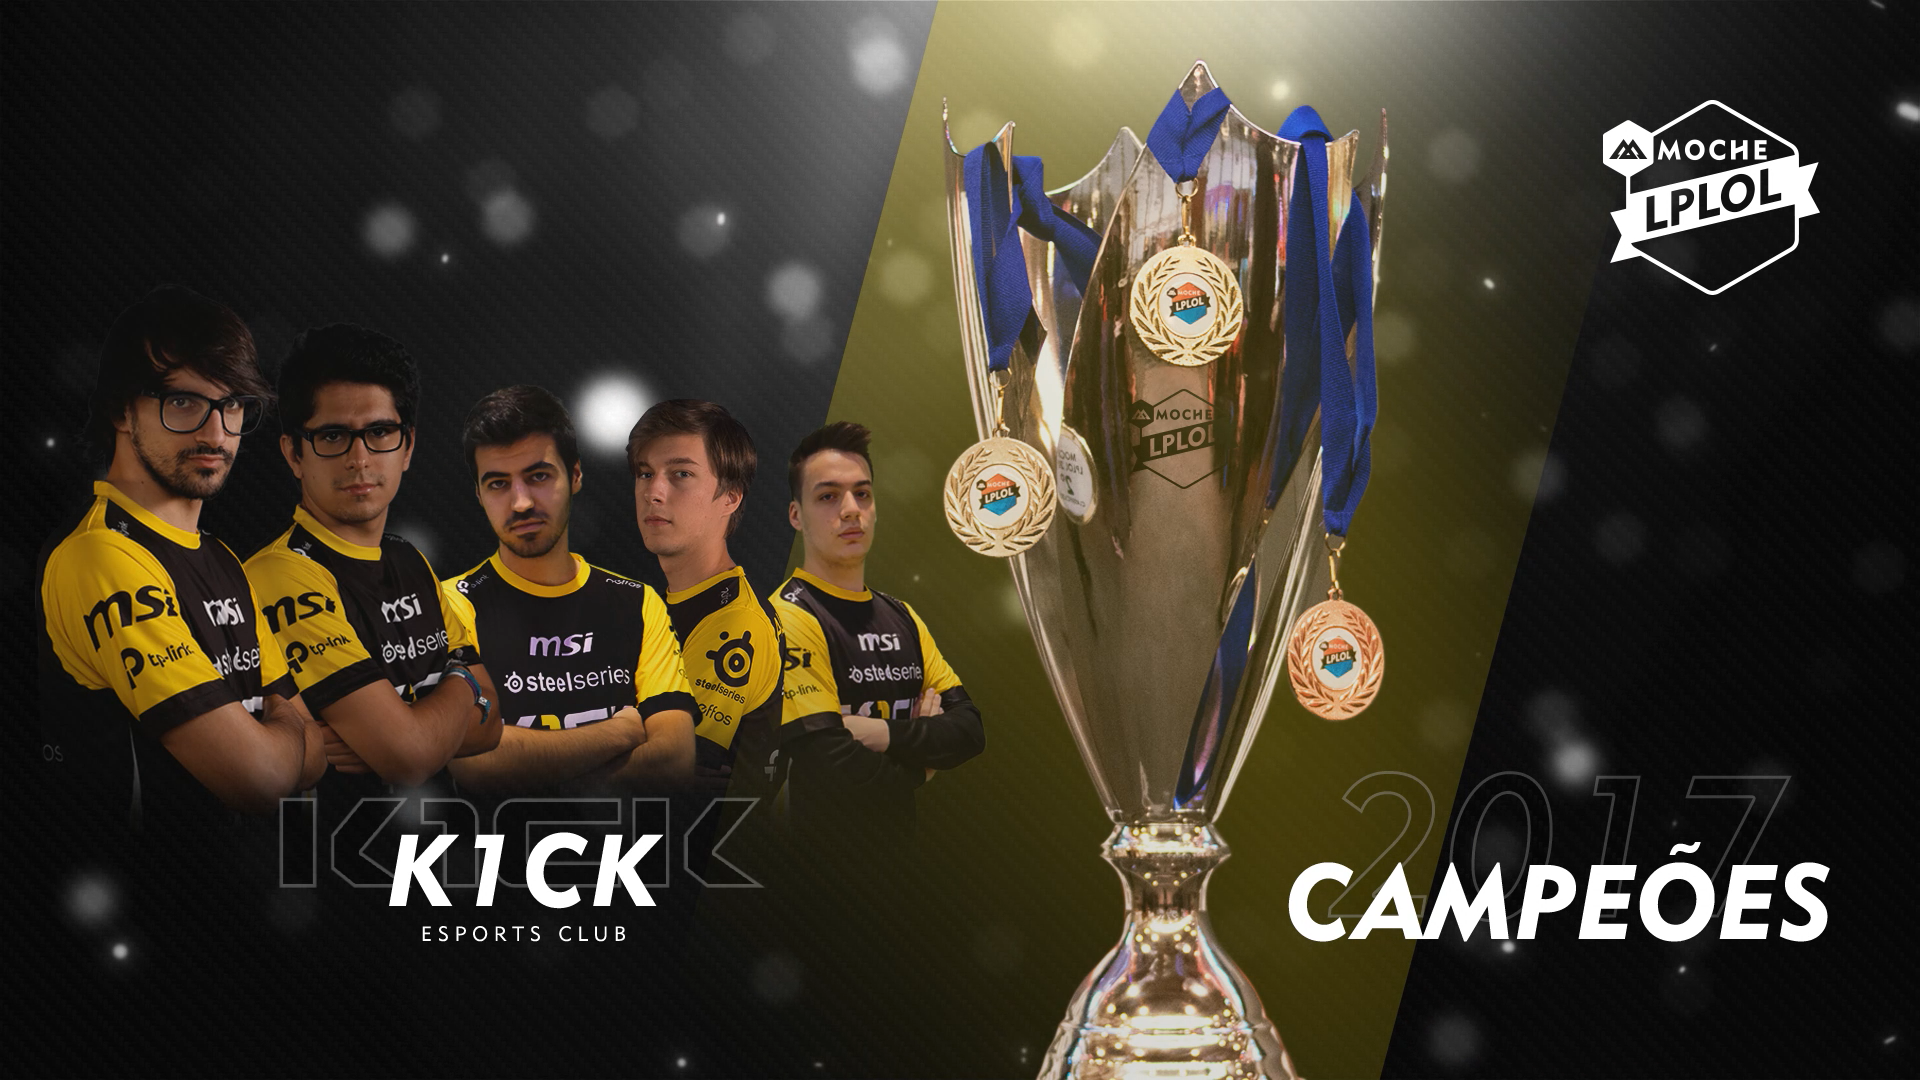 K1ck Esports Club renovam o título de campeão pela 3ª vez